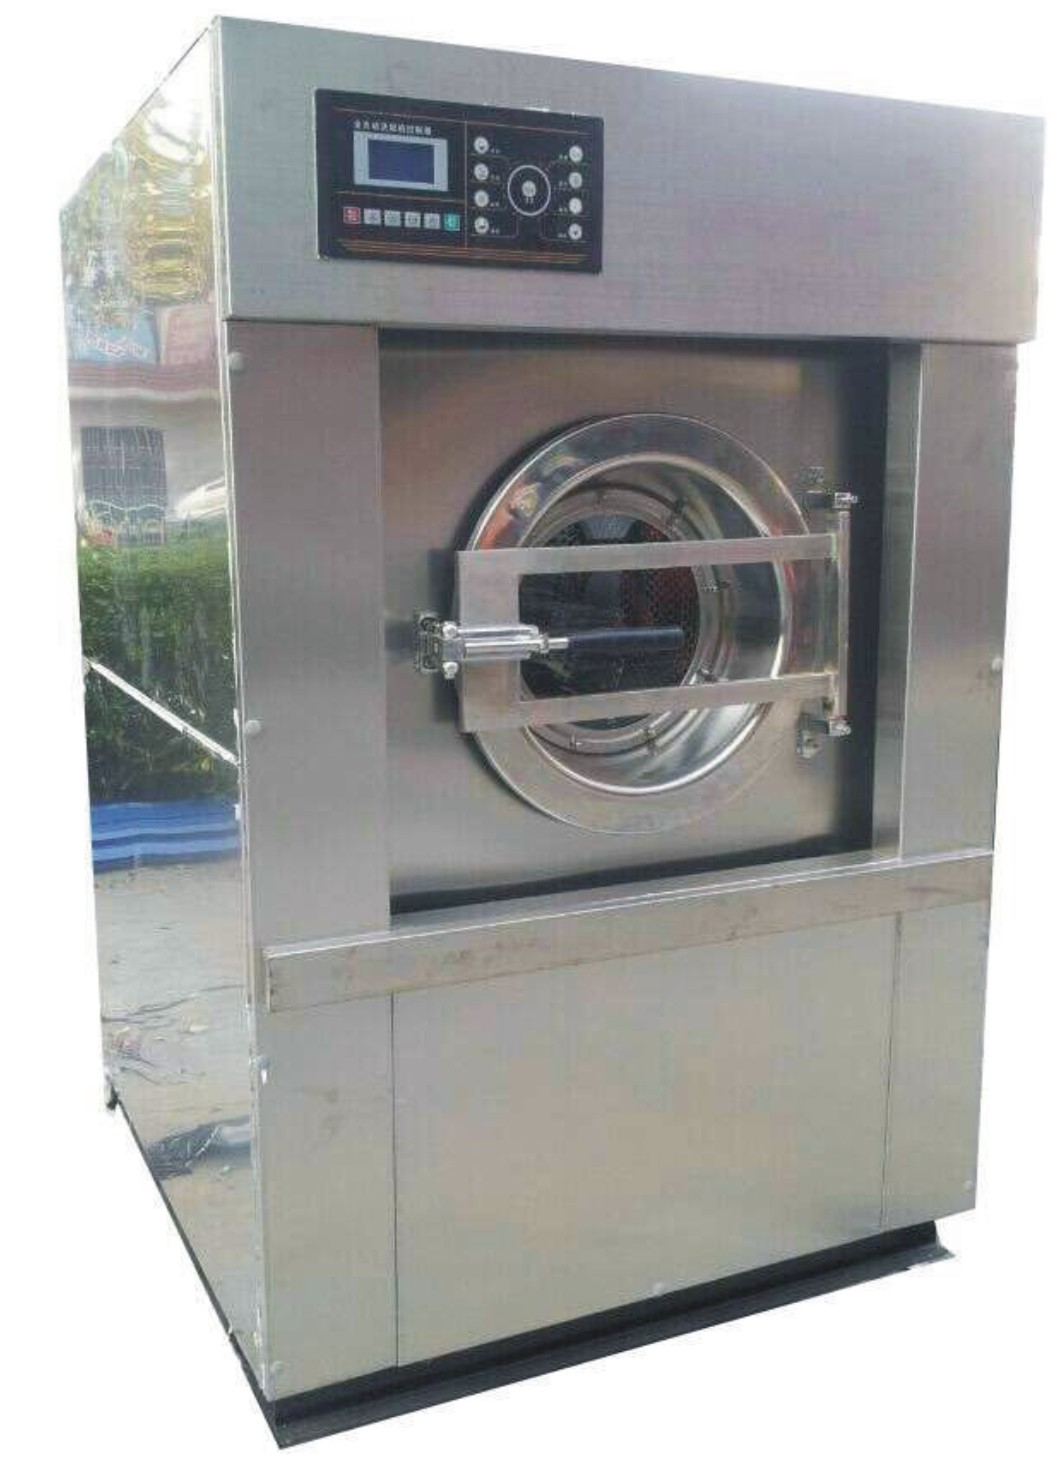 请问广西柳州三江县哪有卖工业洗衣机和洗涤设备-大型水洗设备的？绝对首选“好洁”品牌